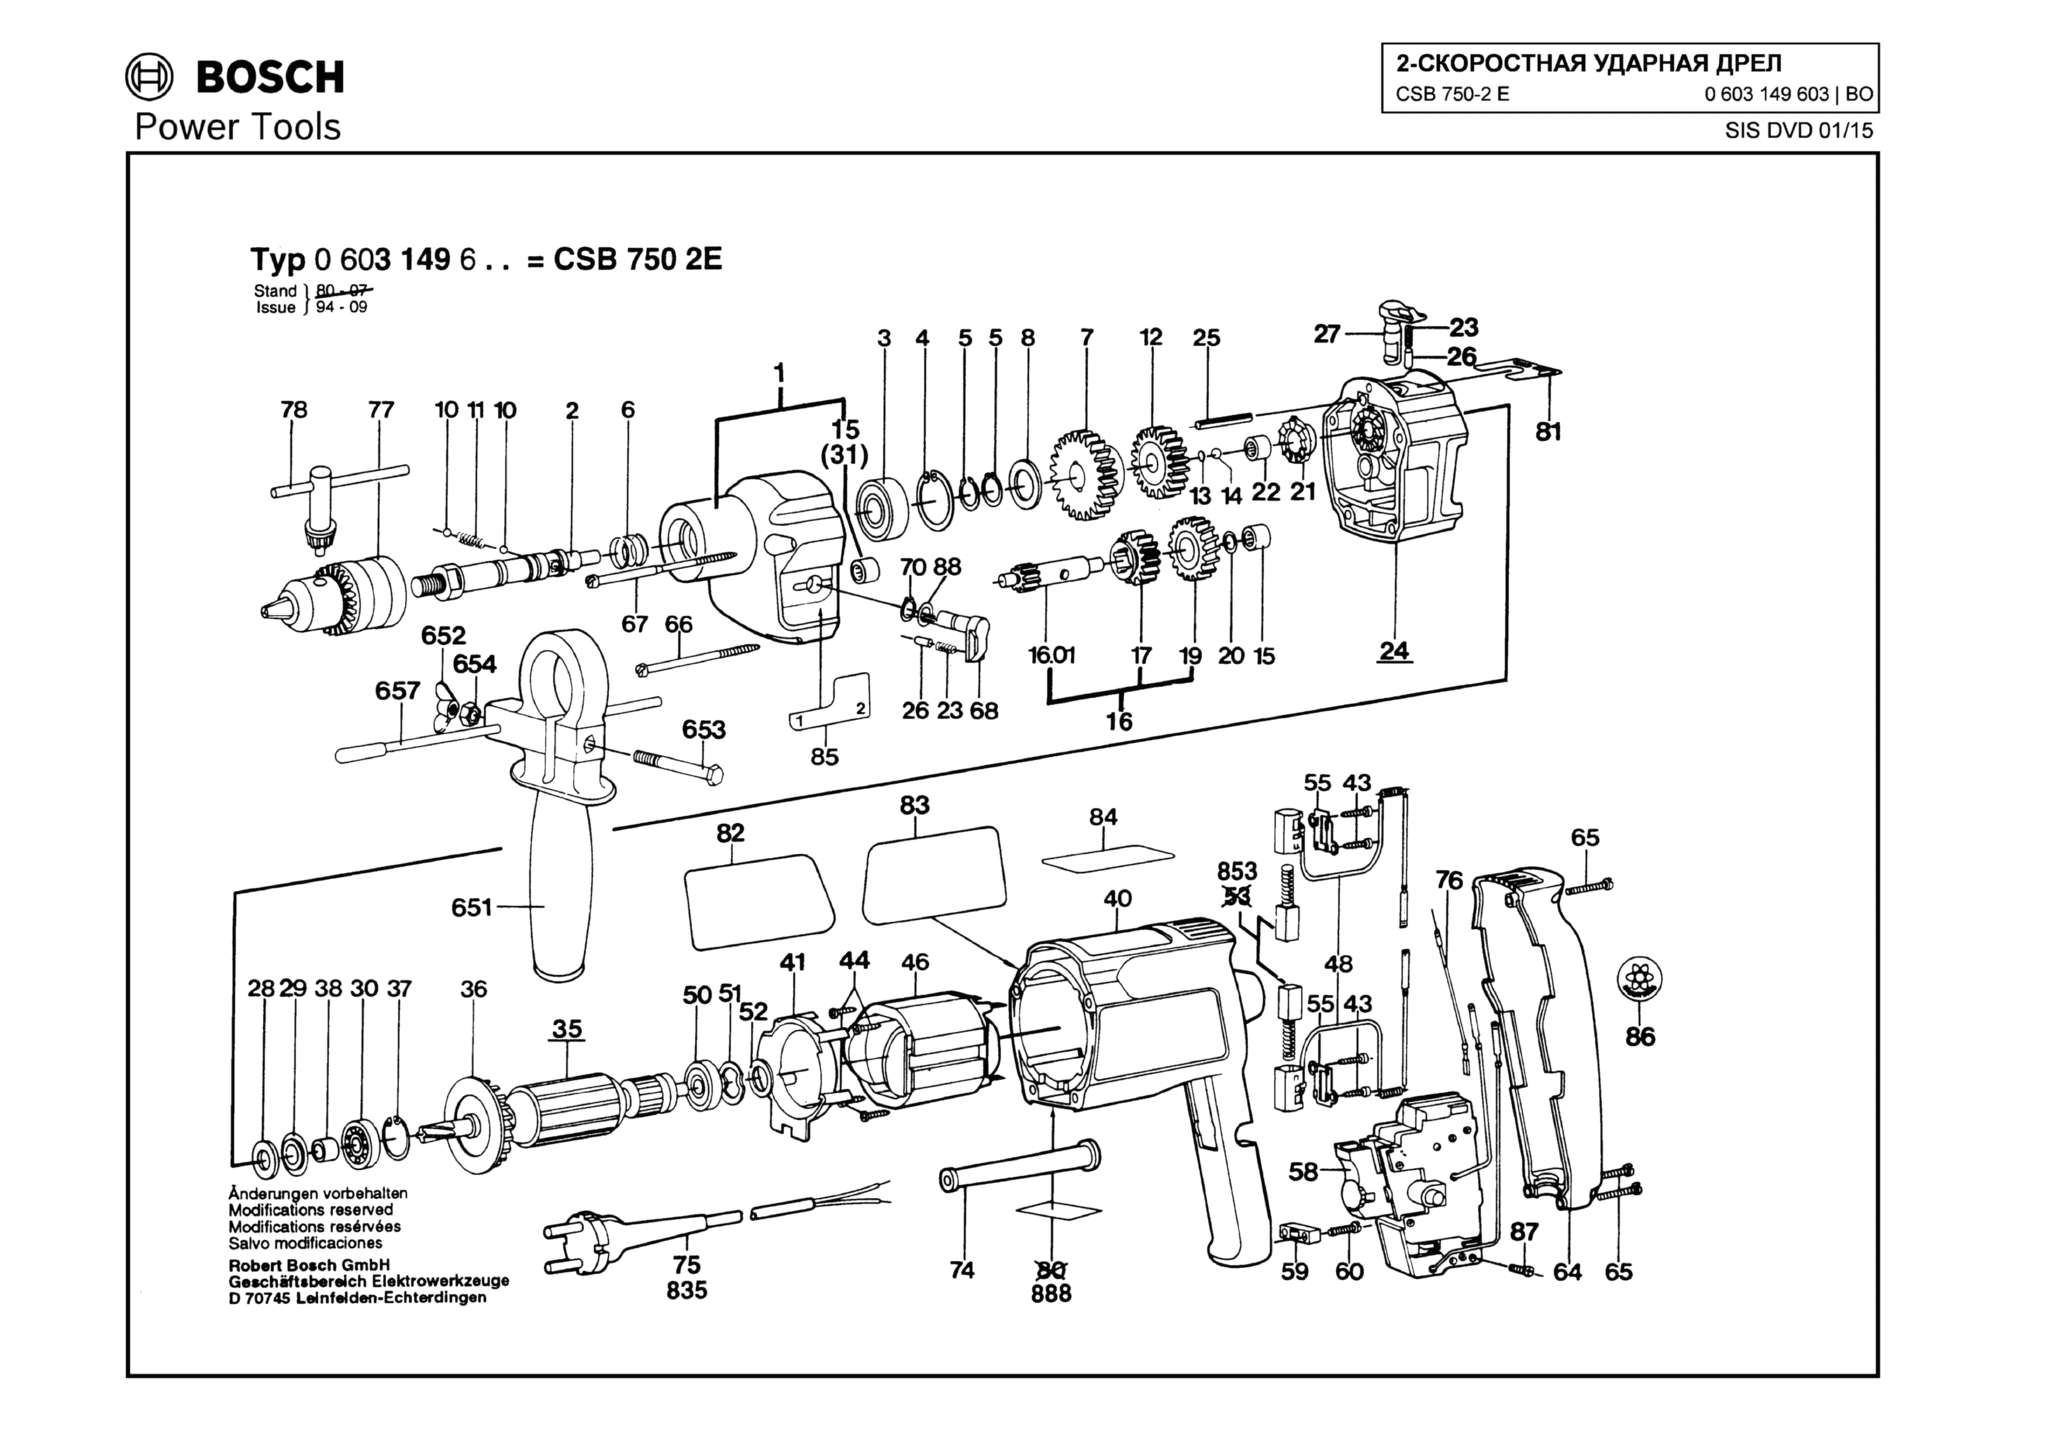 Запчасти, схема и деталировка Bosch CSB 750-2 E (ТИП 0603149603)